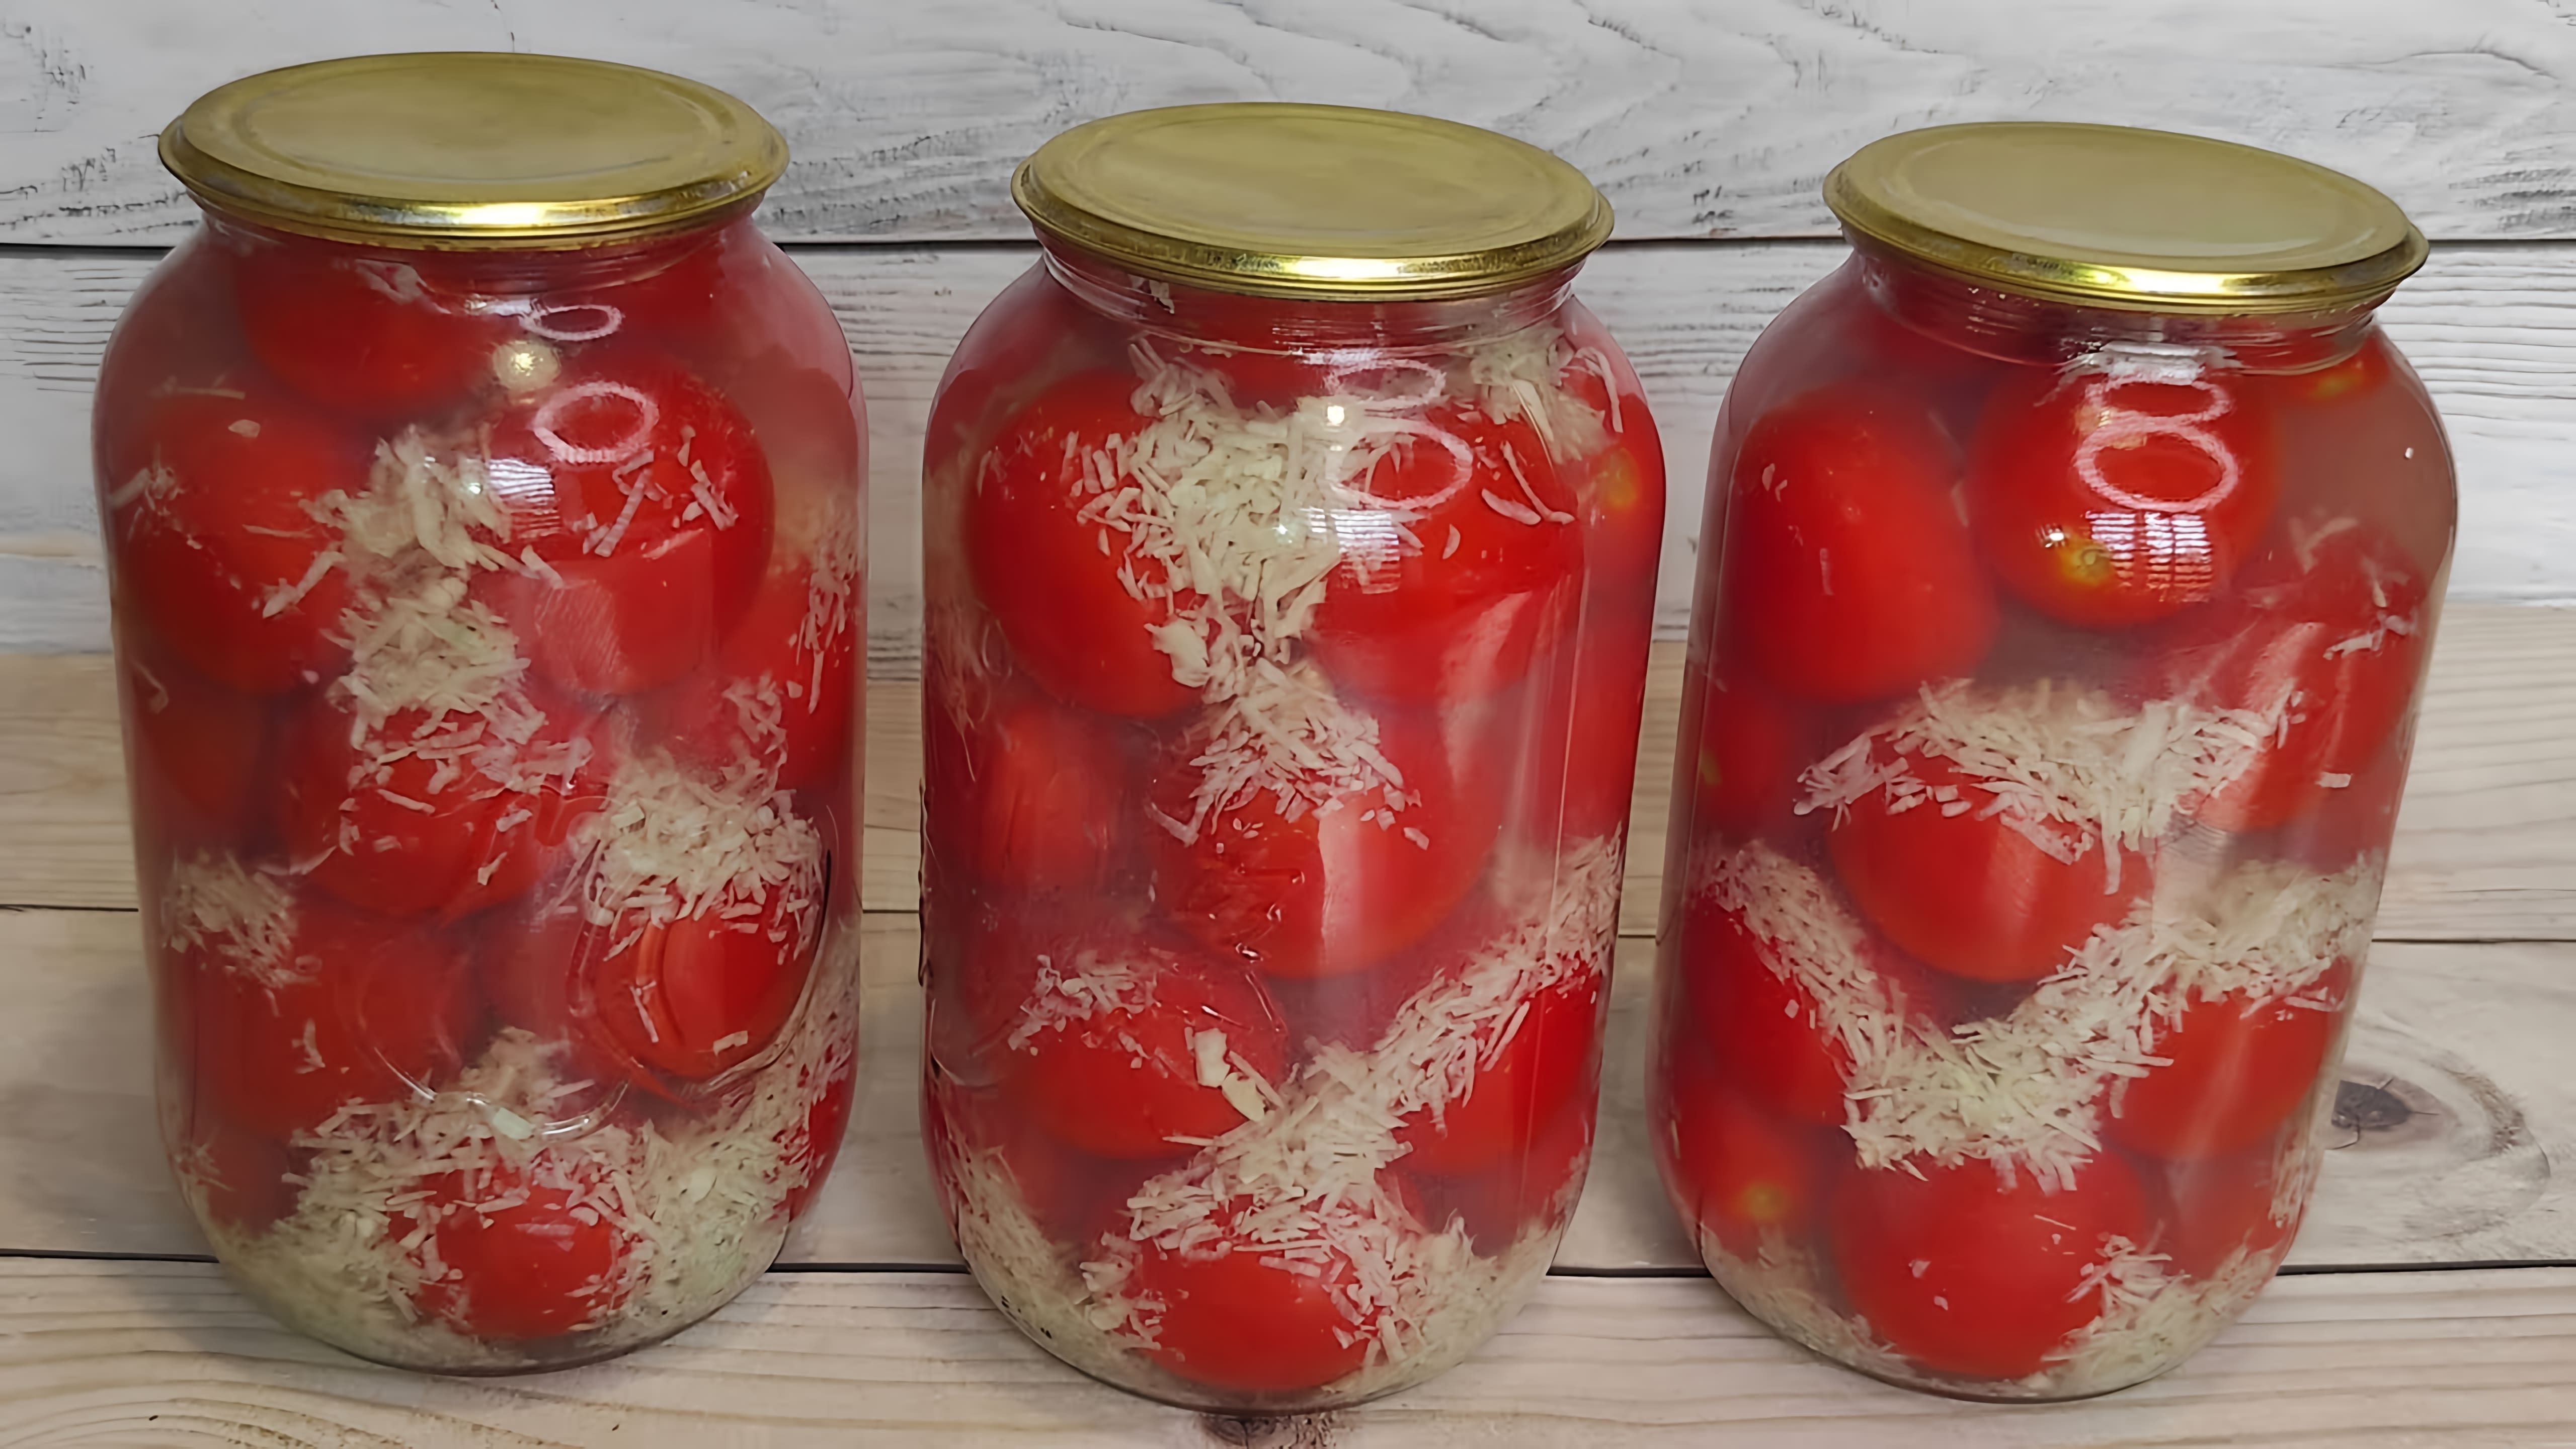 Вкуснейшие помидоры "В снегу" на зиму с чесноком - это рецепт, который позволит сохранить свежесть и вкус помидоров на долгое время